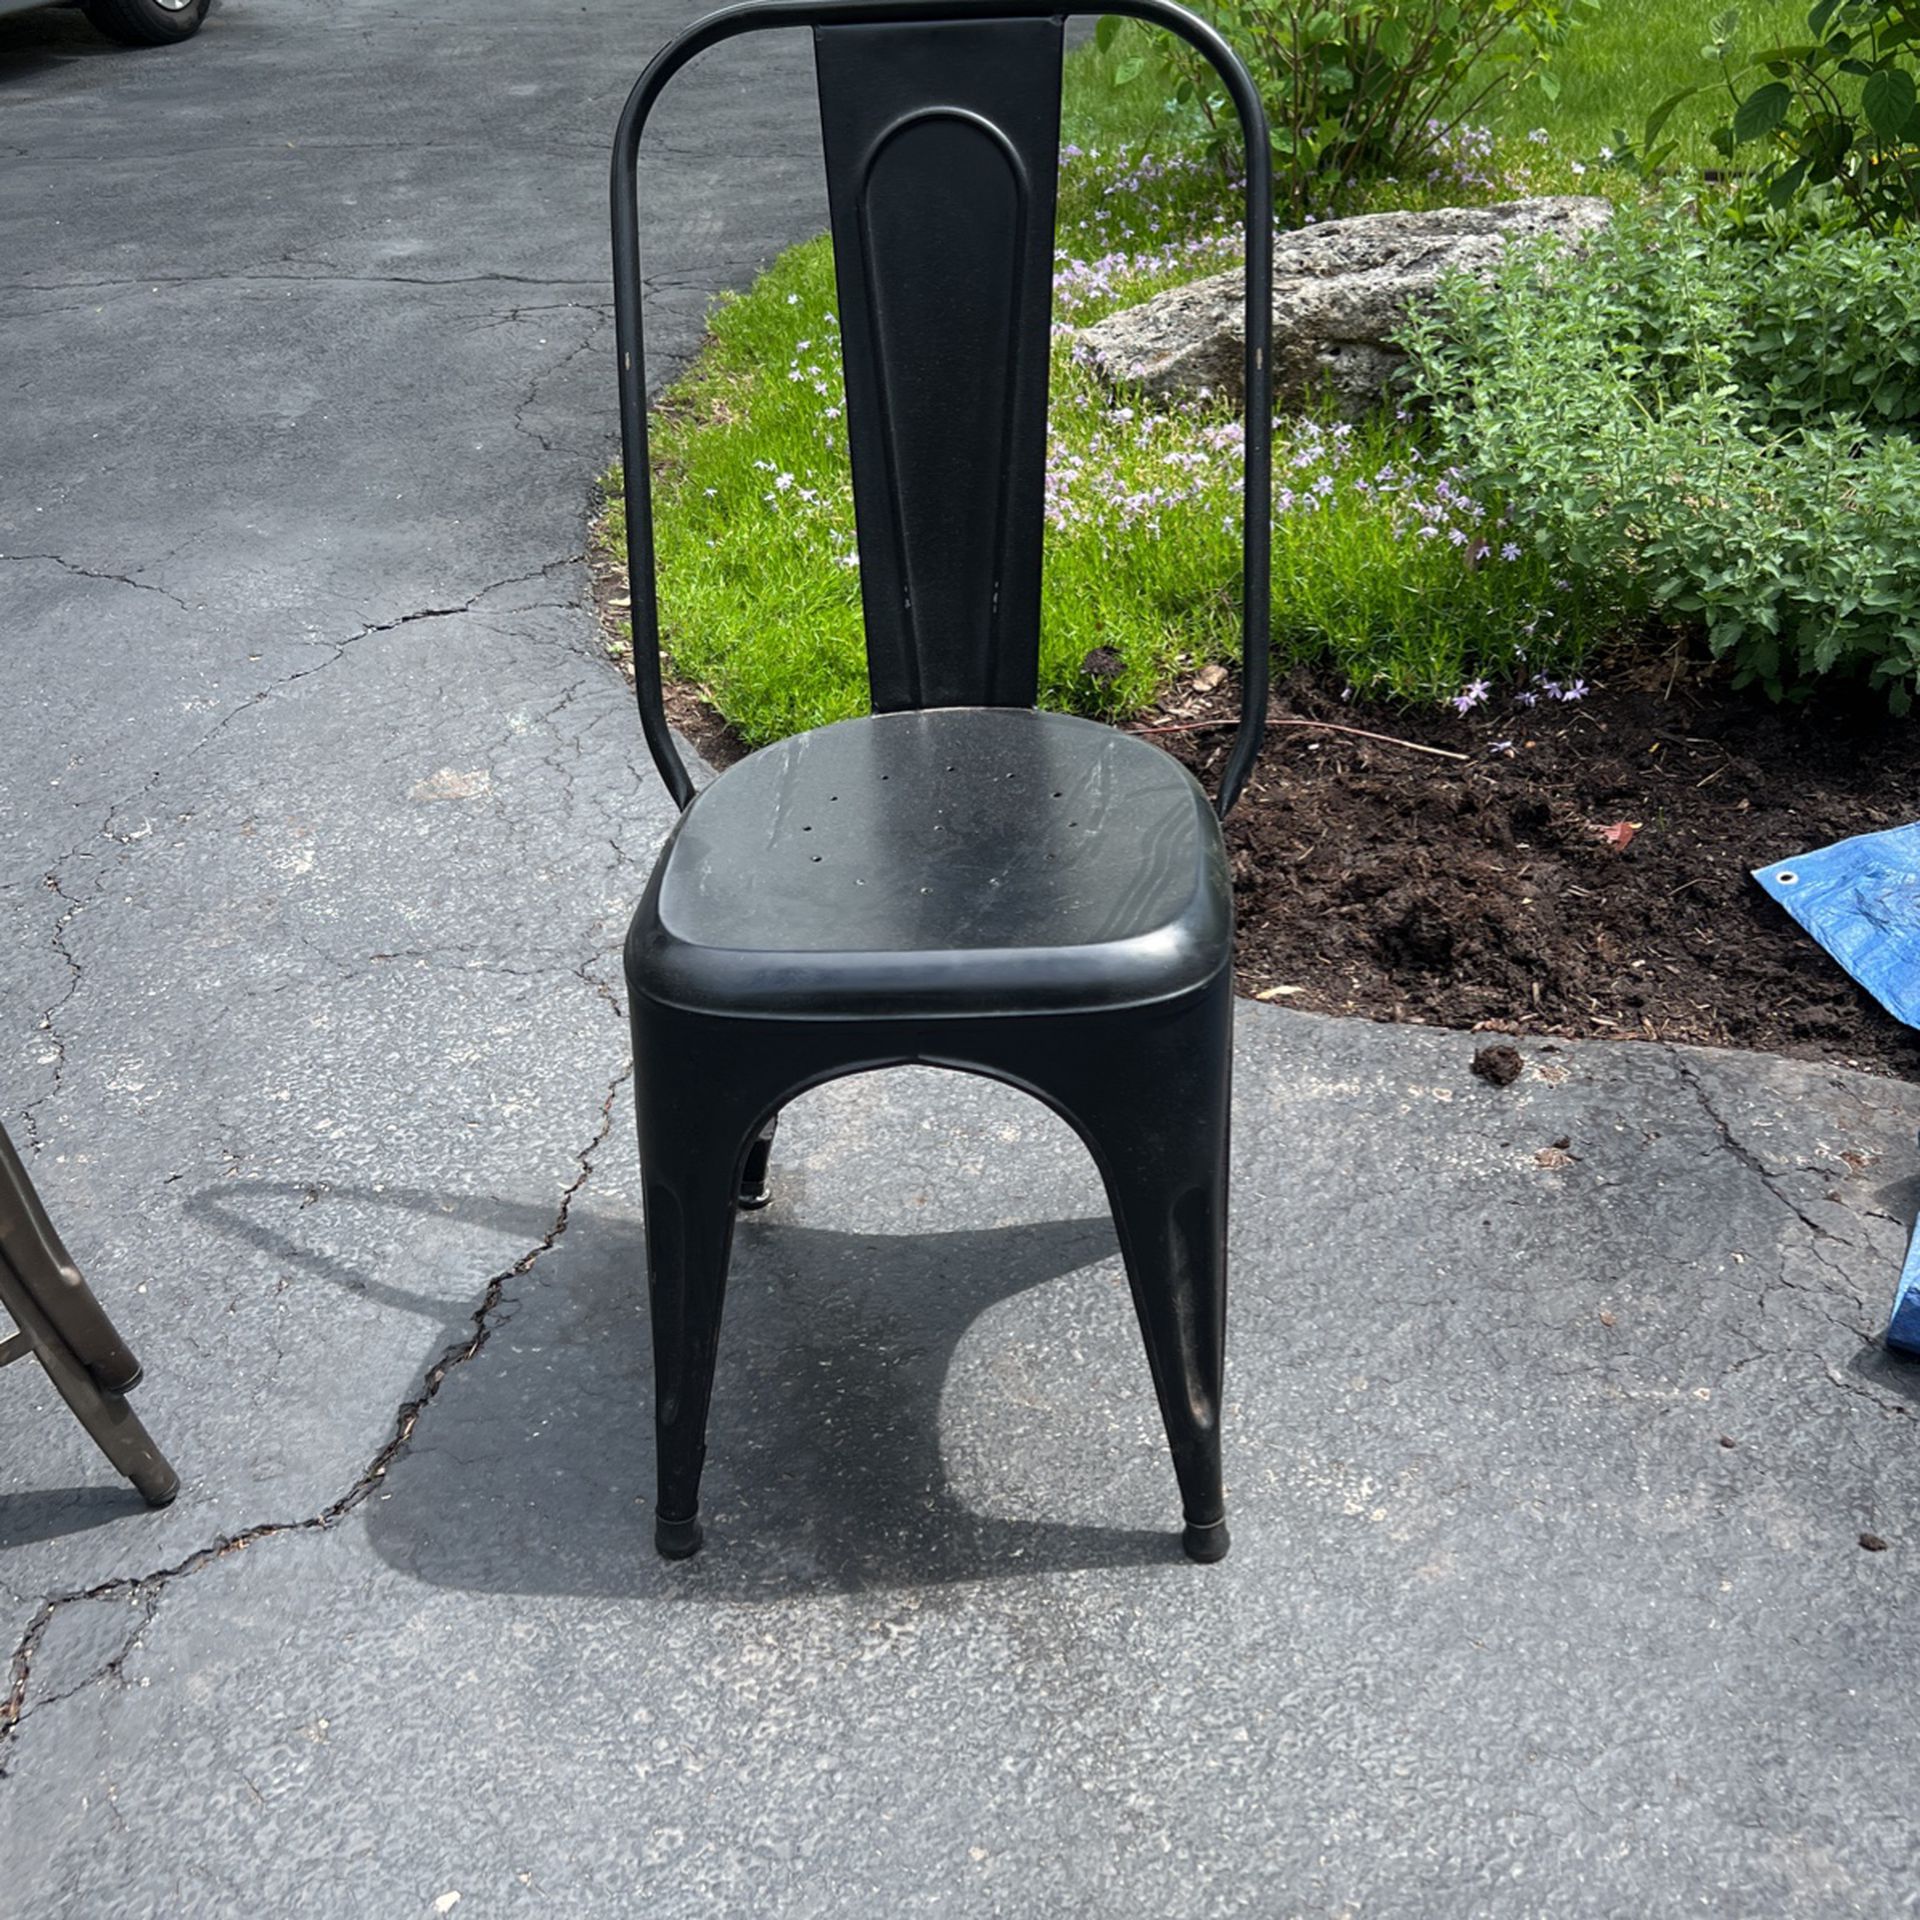 Black Metal Chair $5